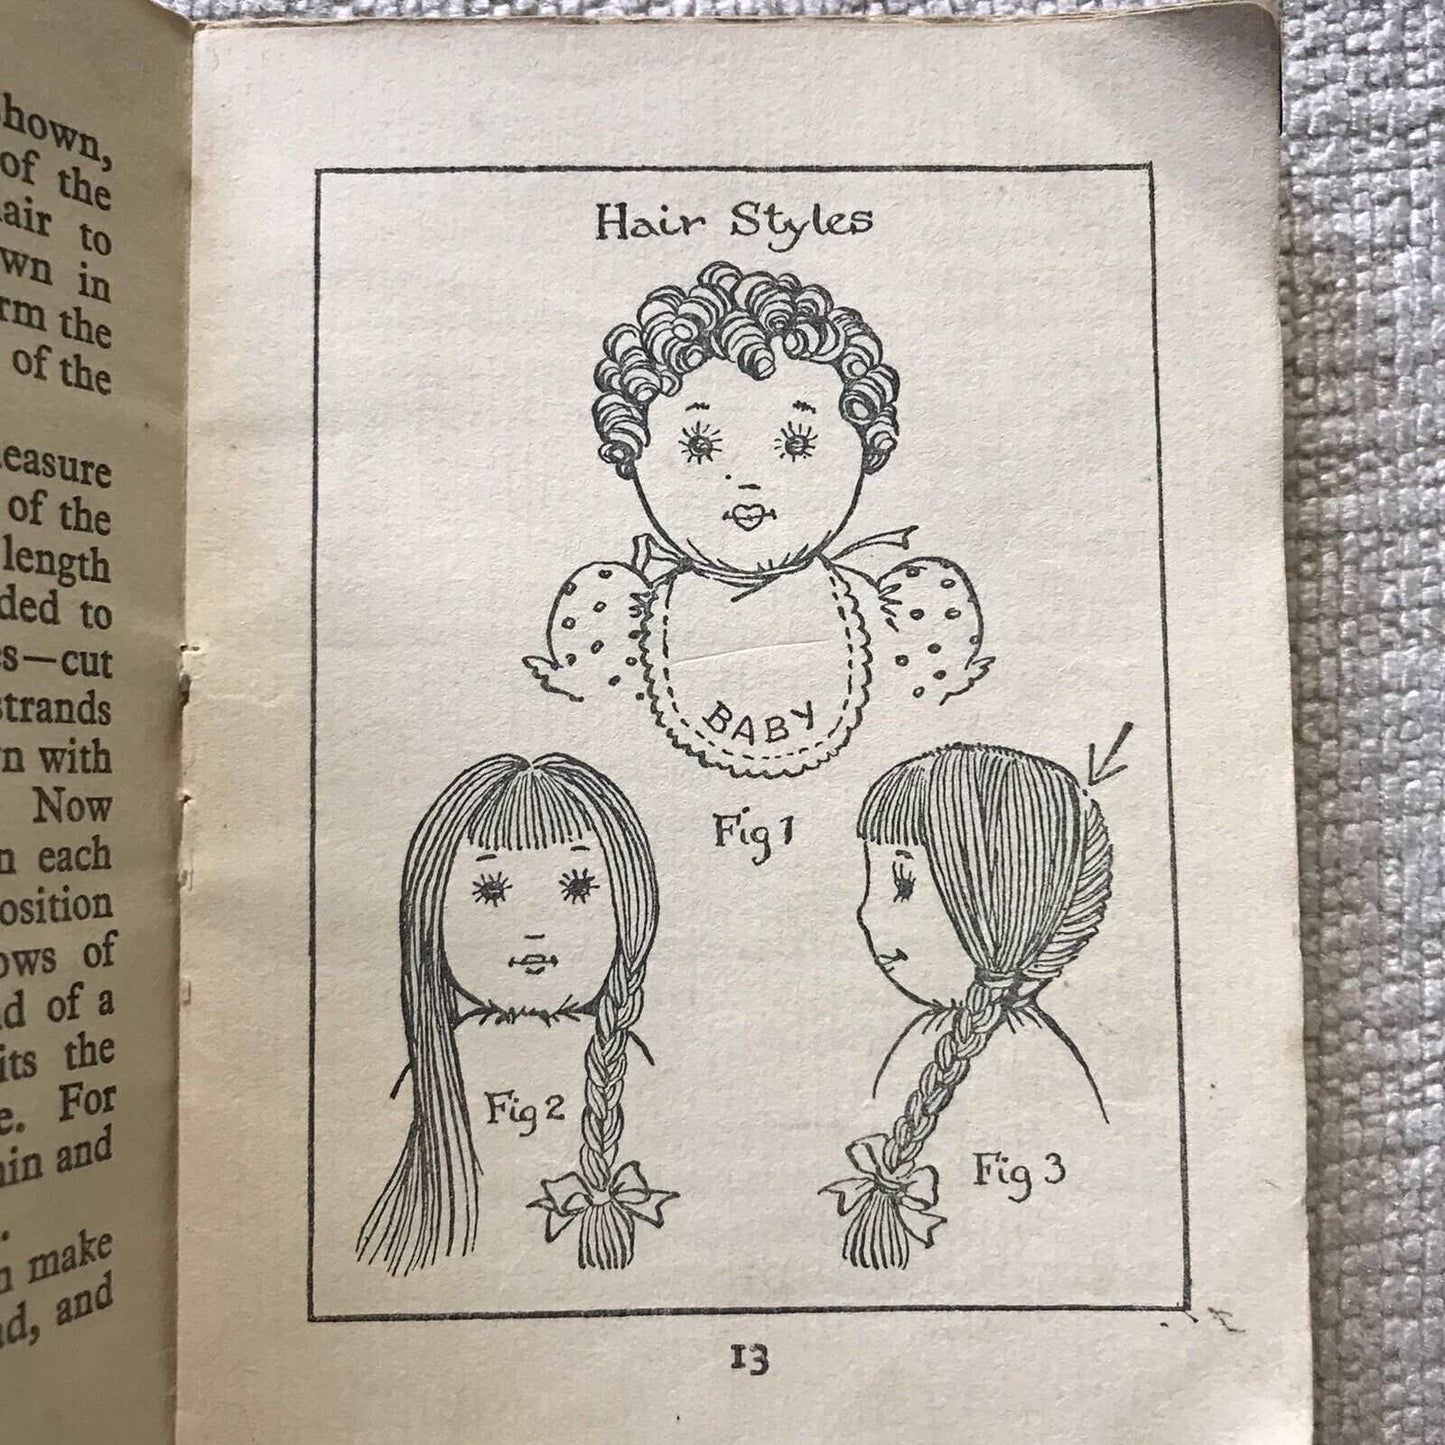 1930’s Dolls & How To Make Them - Winifred M. Ackroyd(Photochrom) Honeyburn Books (UK)